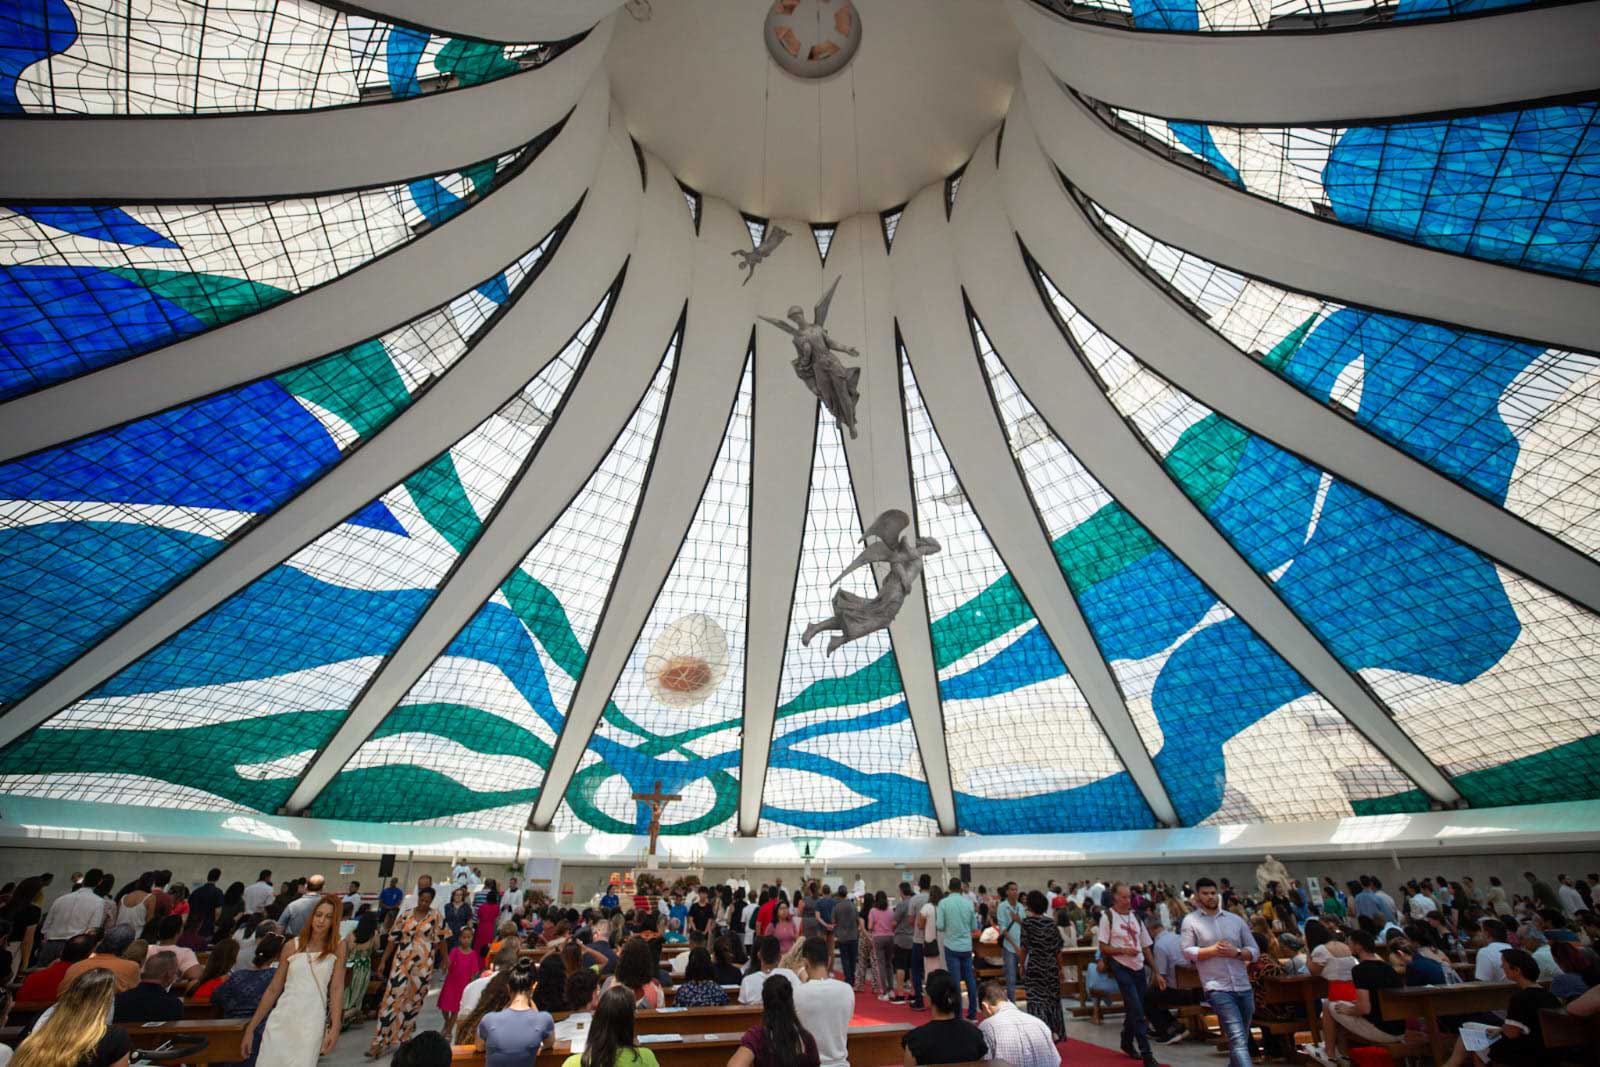 Catedral faz 54 anos e celebra com Quermesse Mariana durante três dias